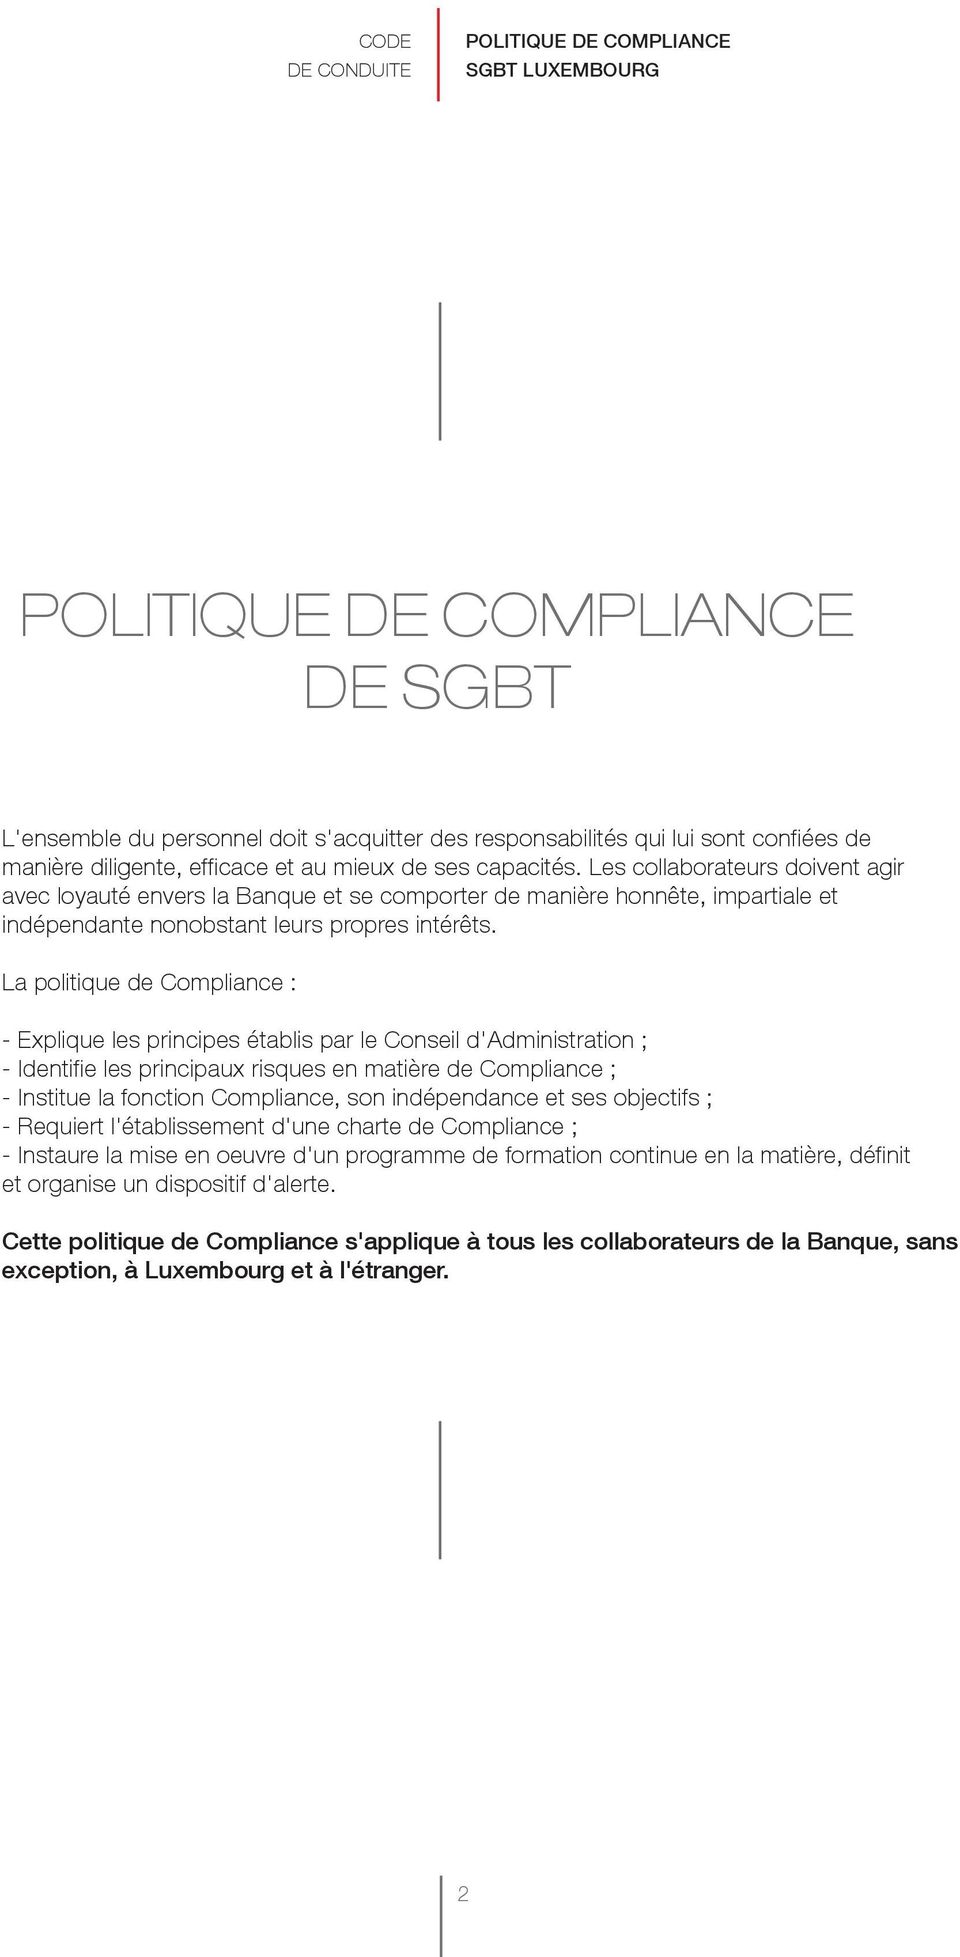 La politique de Compliance : - Explique les principes établis par le Conseil d'administration ; - Identifie les principaux risques en matière de Compliance ; - Institue la fonction Compliance, son